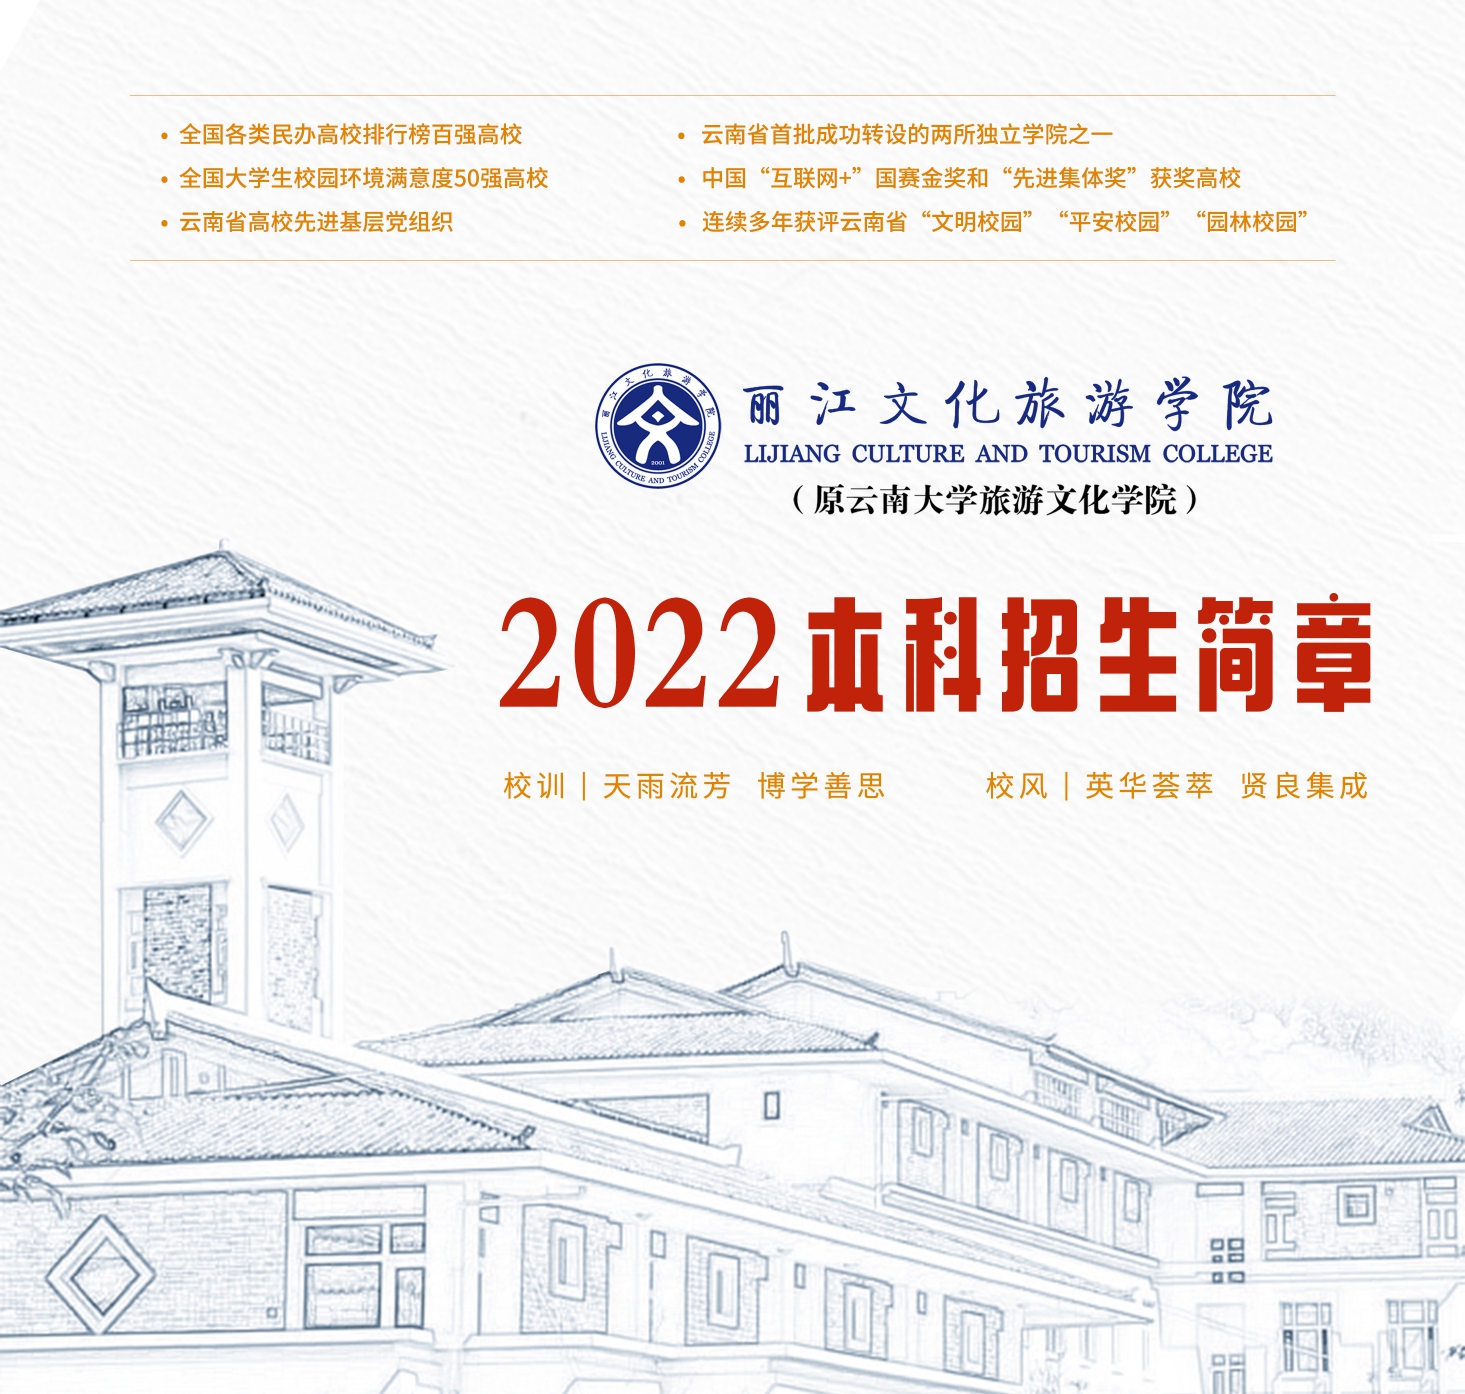 丽江文化旅游学院2022年本科招生简章_page-0001